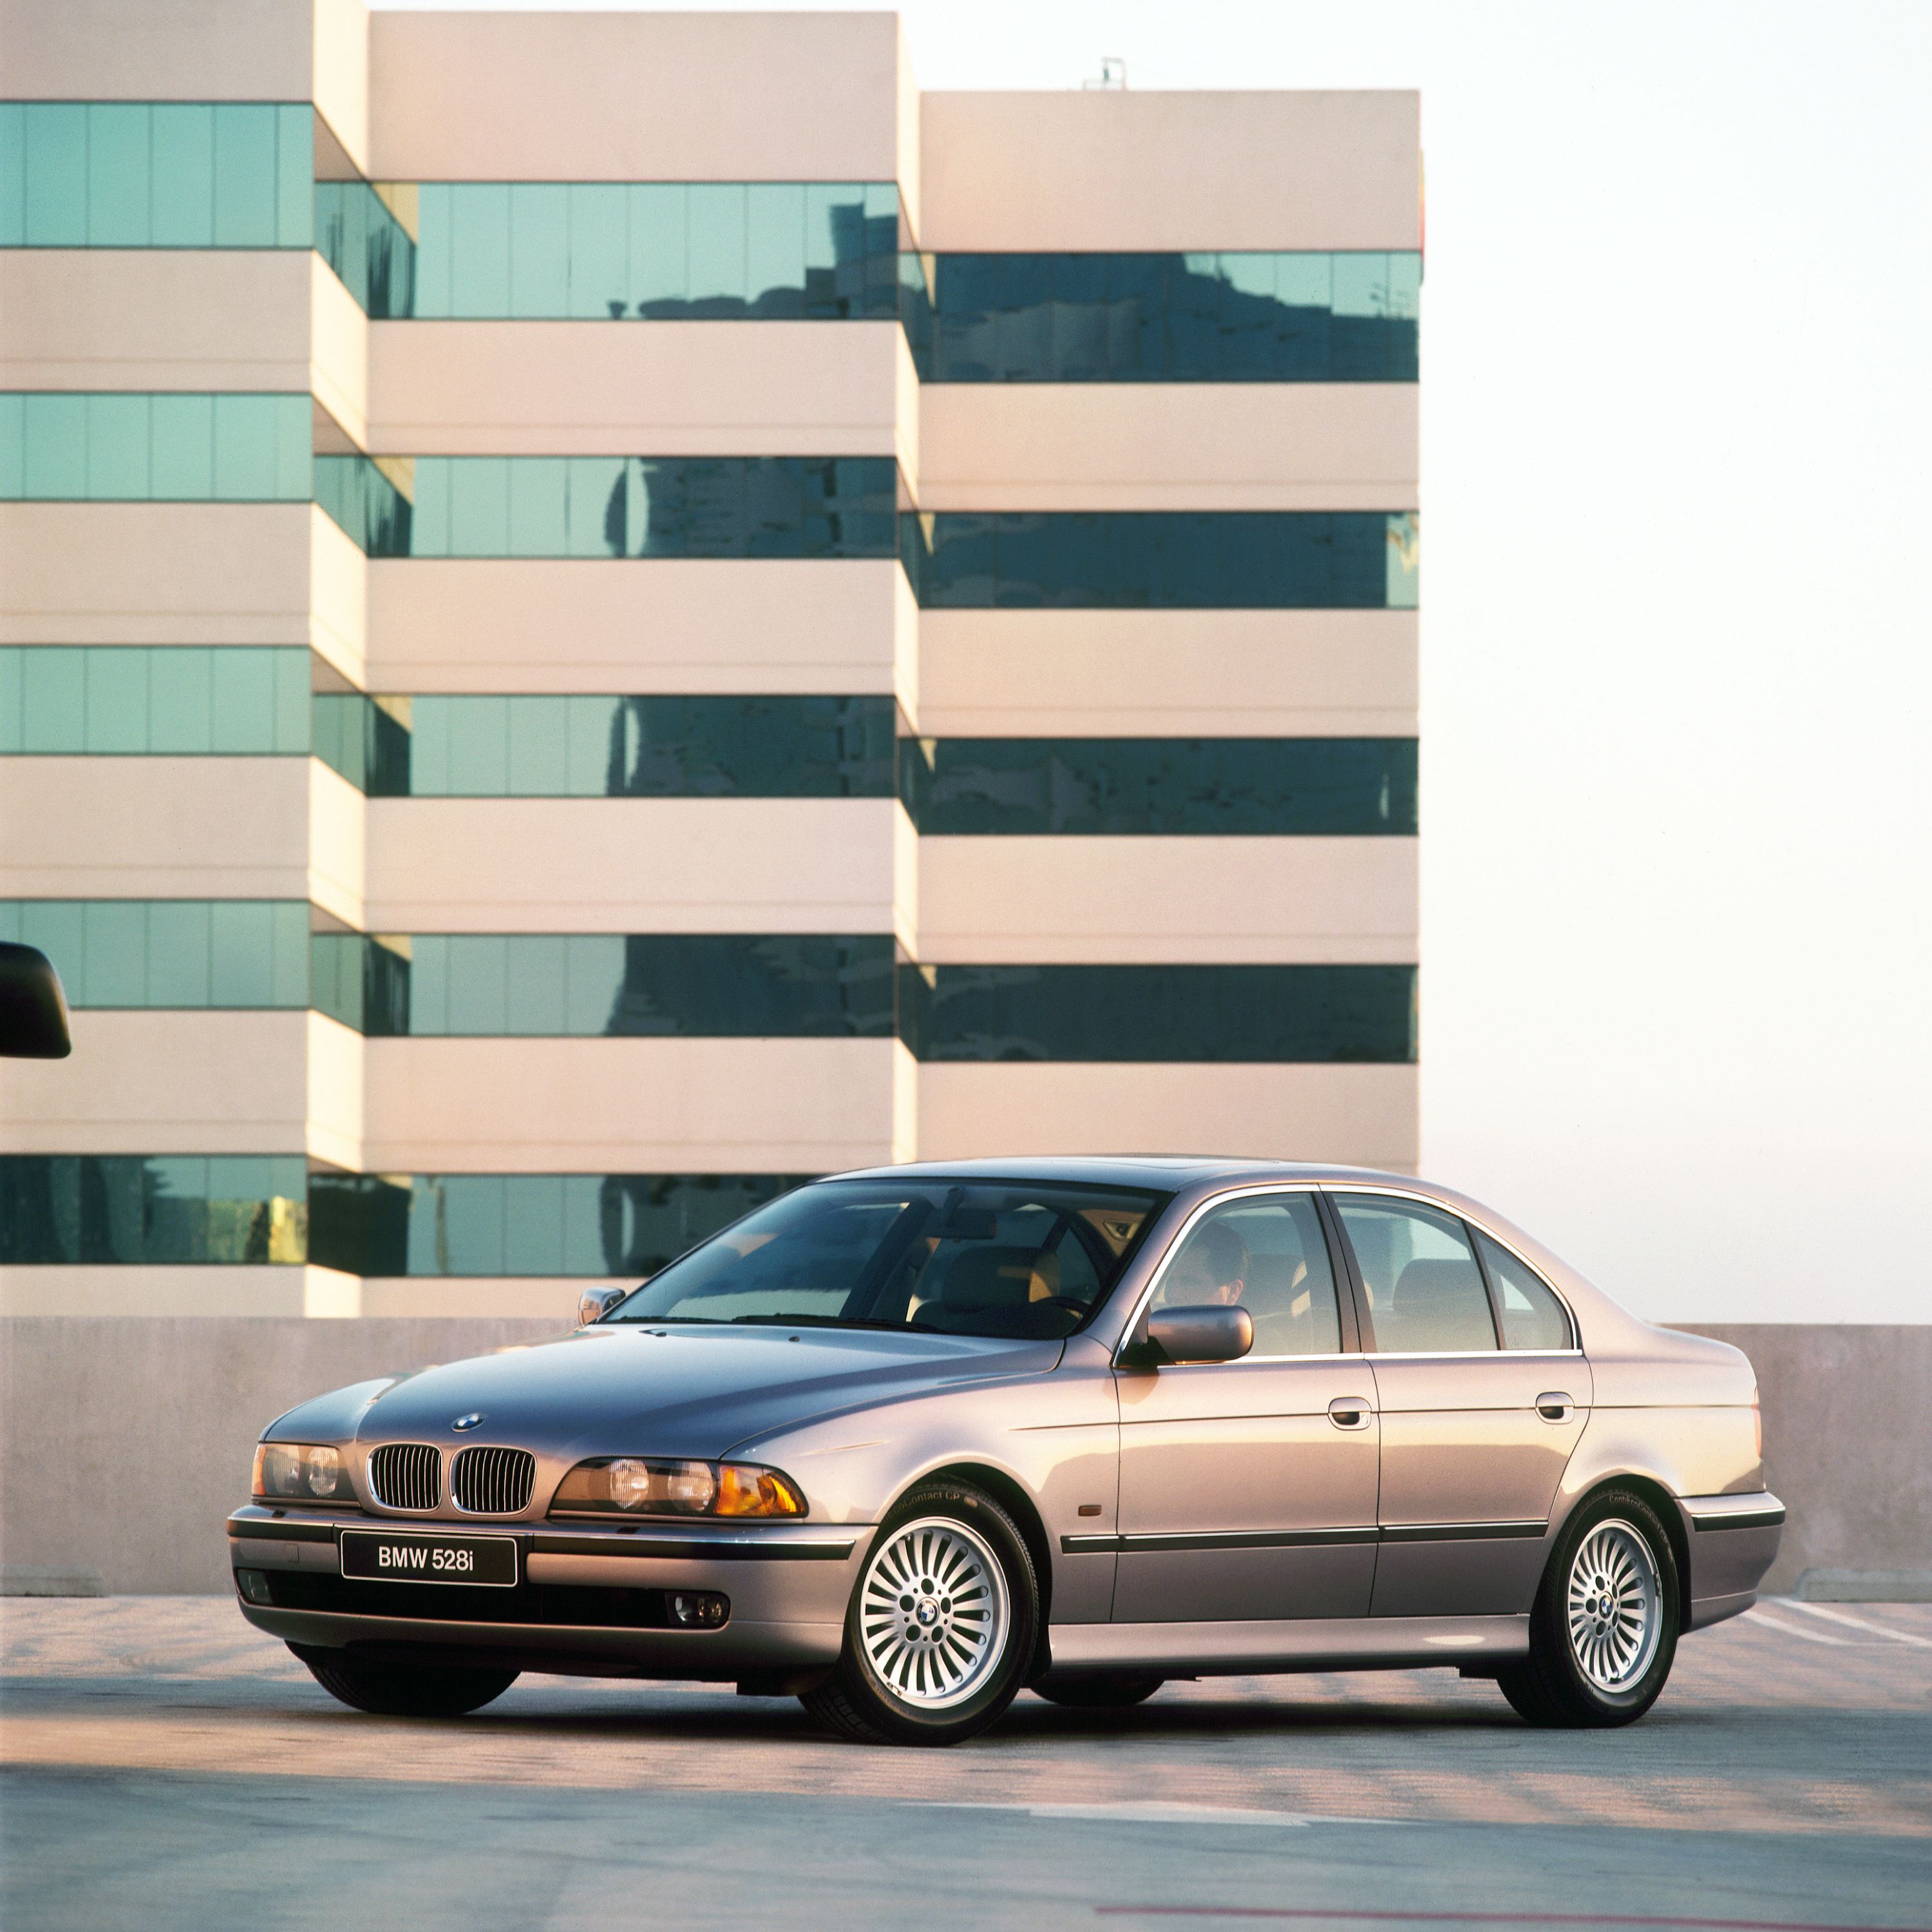 BMW Série 5 Berline (E39) vue de trois quarts de profil pendant le stationnement sur le toit d’un garage souterrain